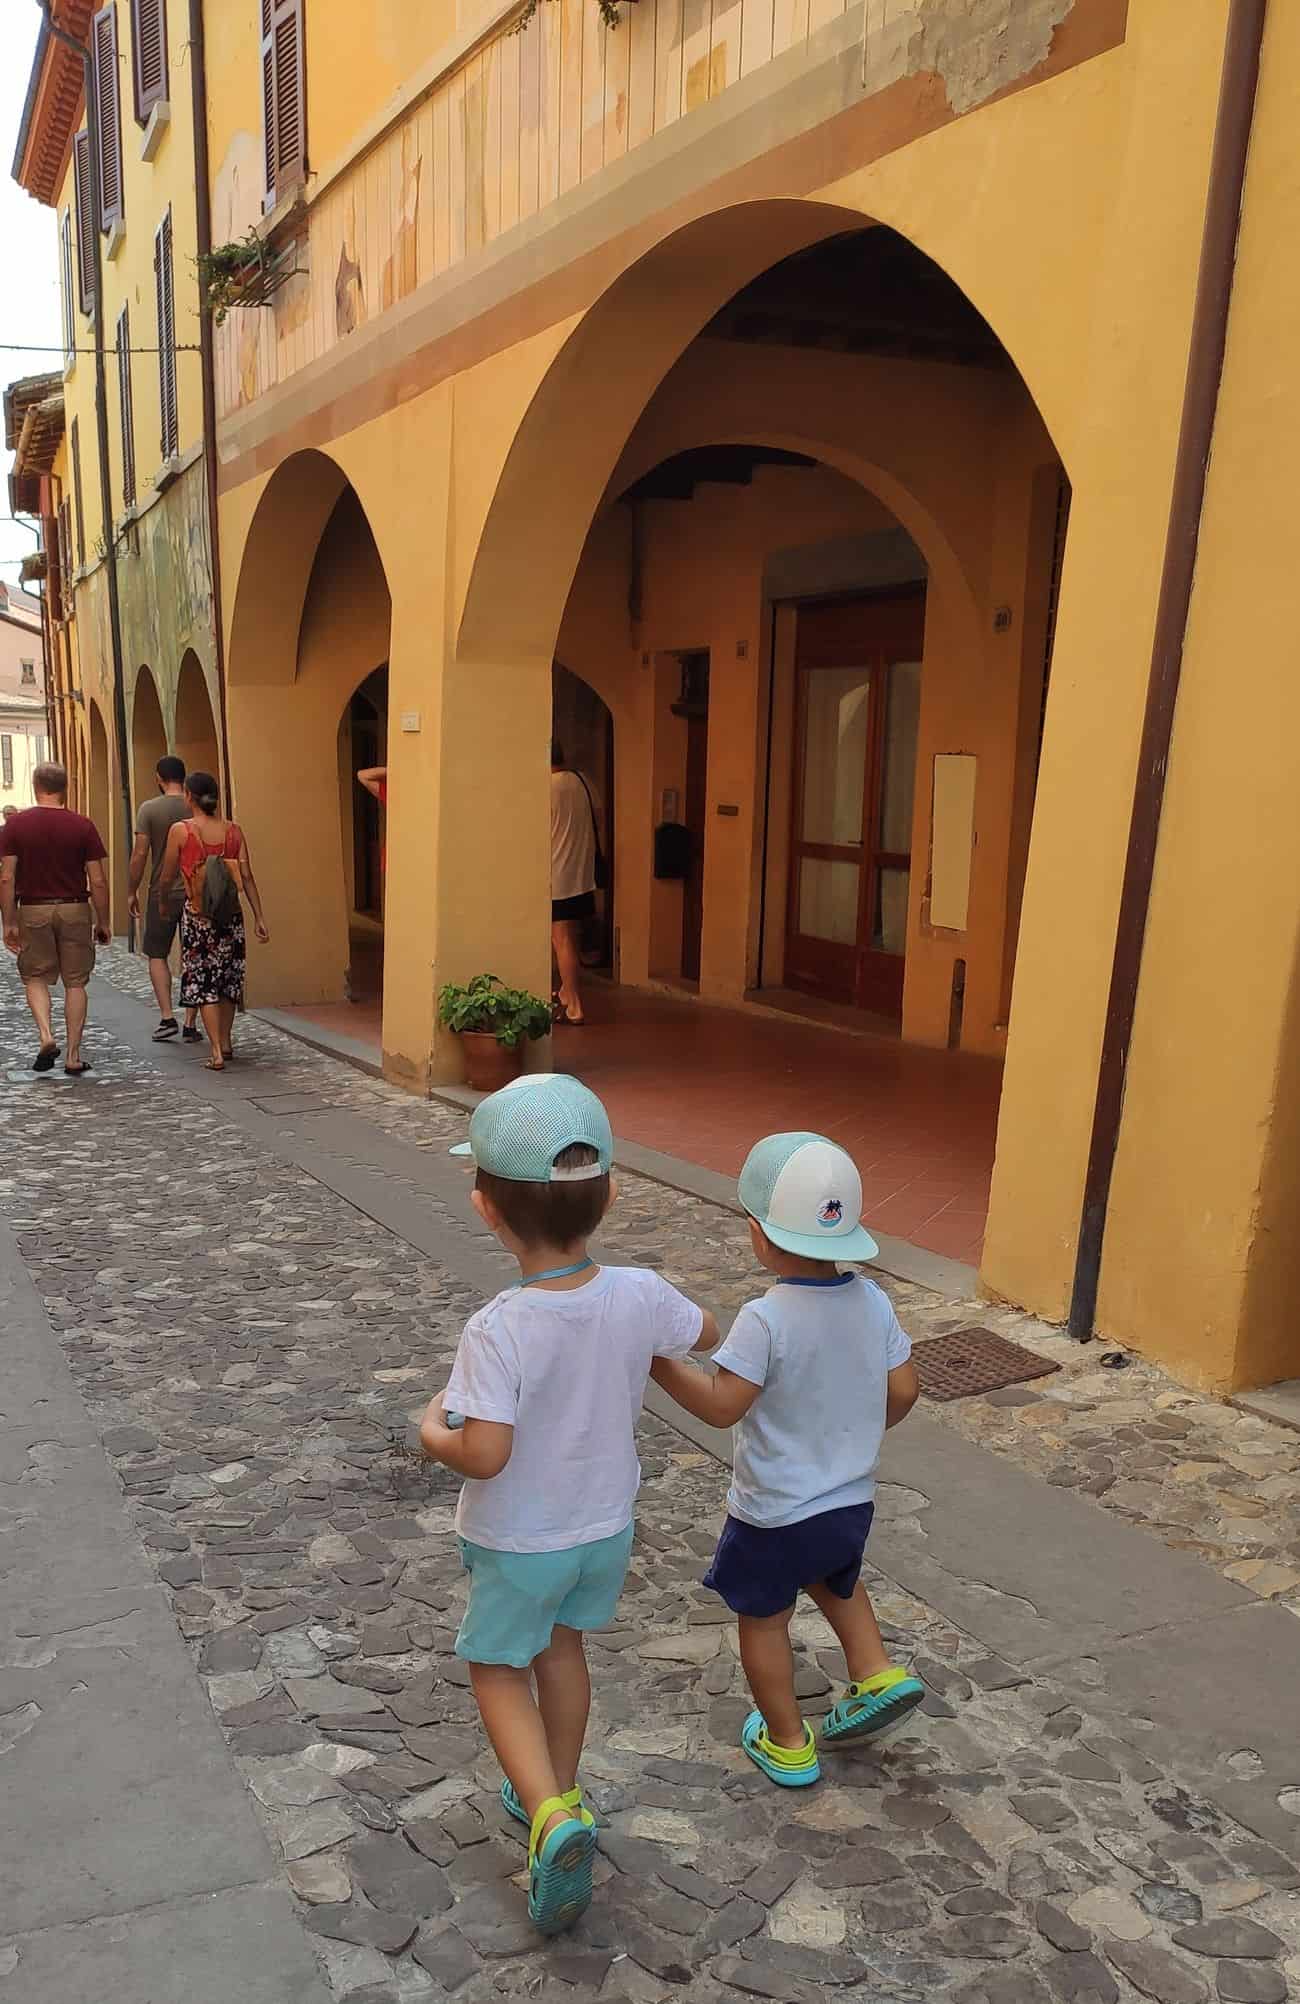 Bambini camminano per il borgo medievale